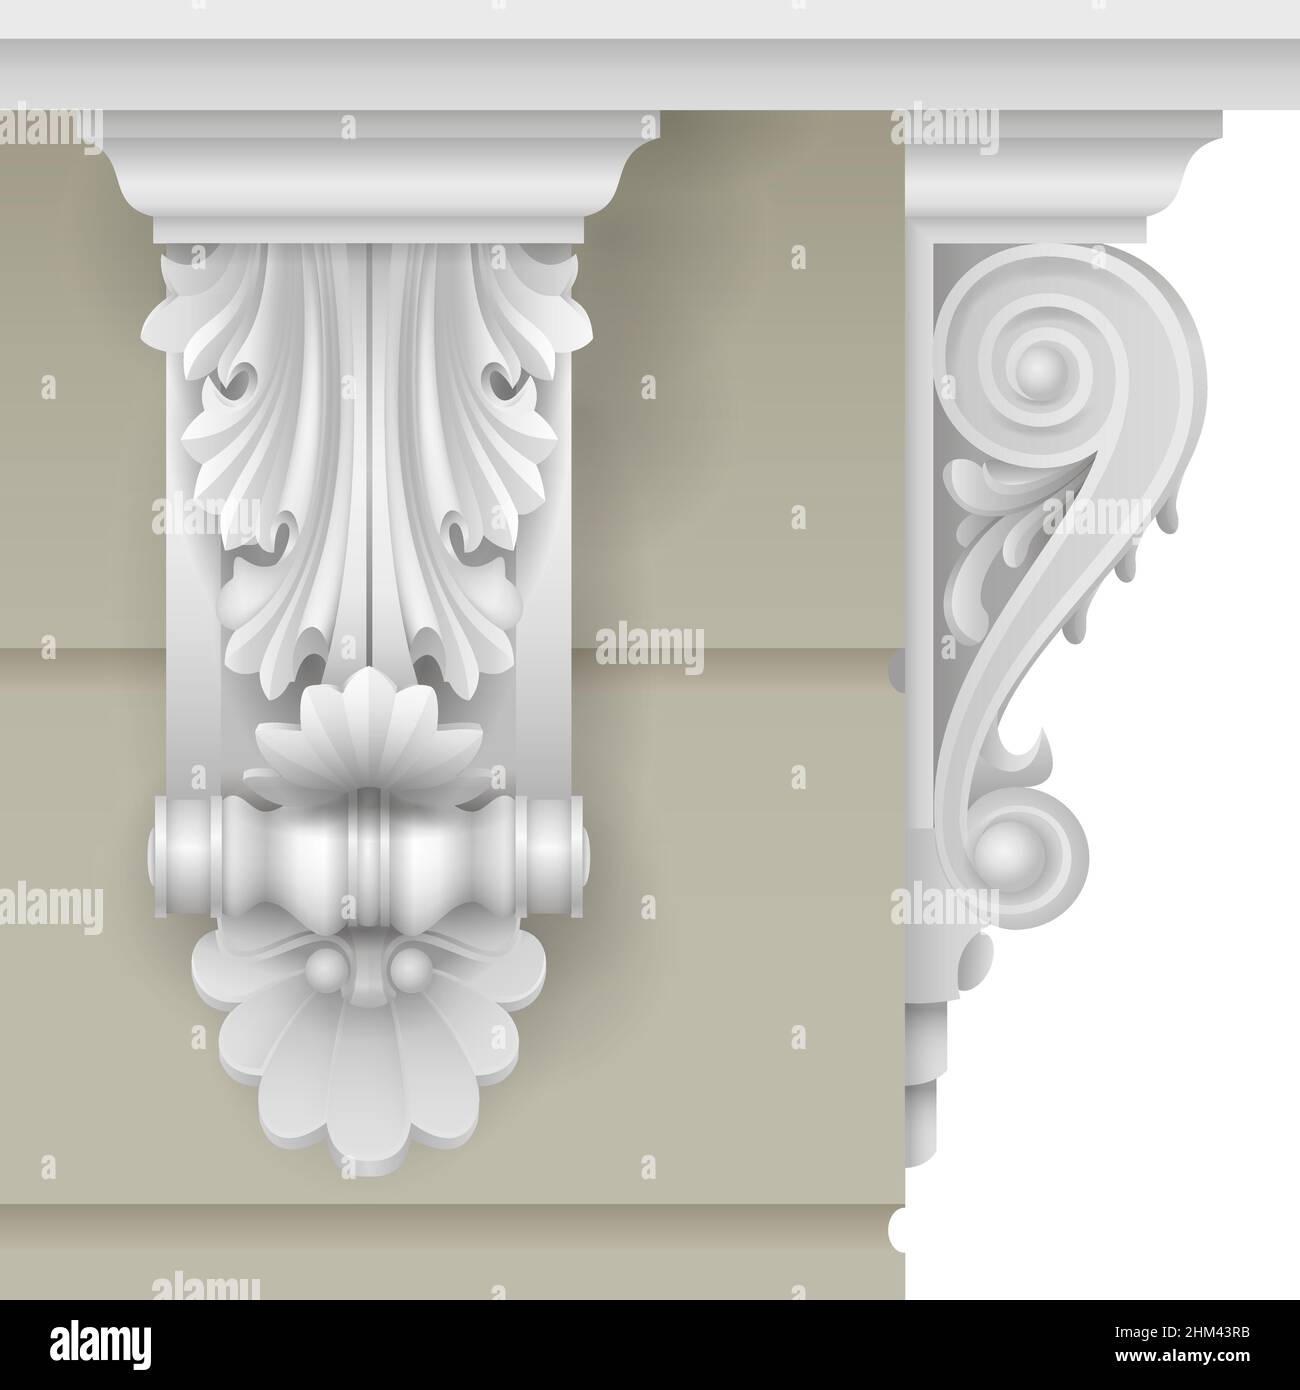 Façade architecturale support baroque classique pour la façade du bâtiment.Graphiques vectoriels. Illustration de Vecteur